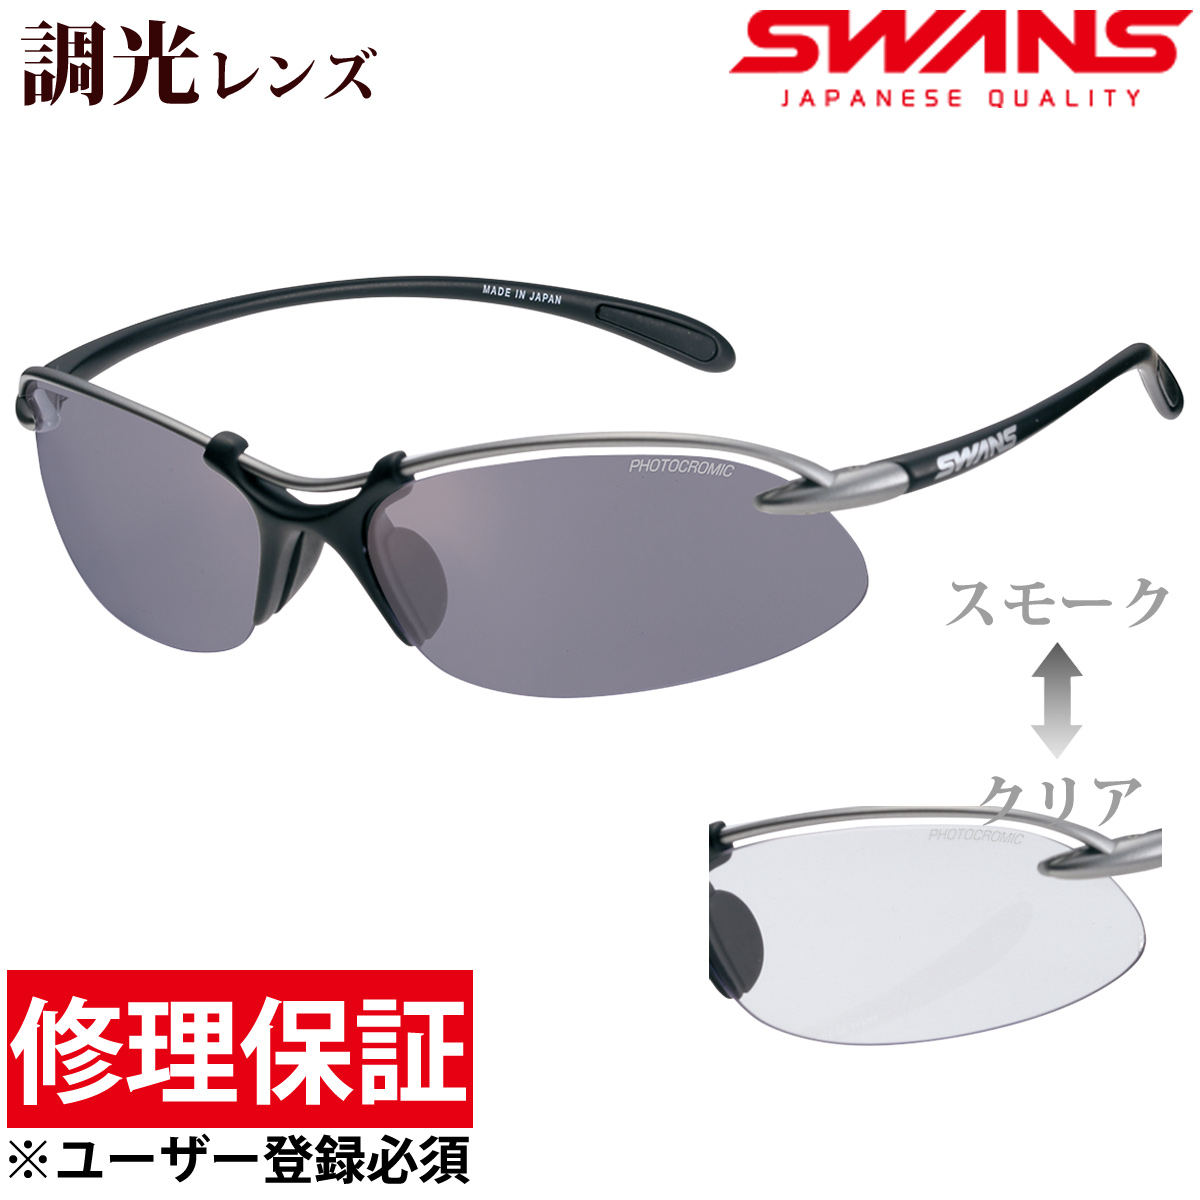 スワンズ スポーツサングラス エアレス ウェイブ Airless-Wave 調光レンズ メンズ レディース SWANS スワンズ 超軽量 UV 紫外線カット